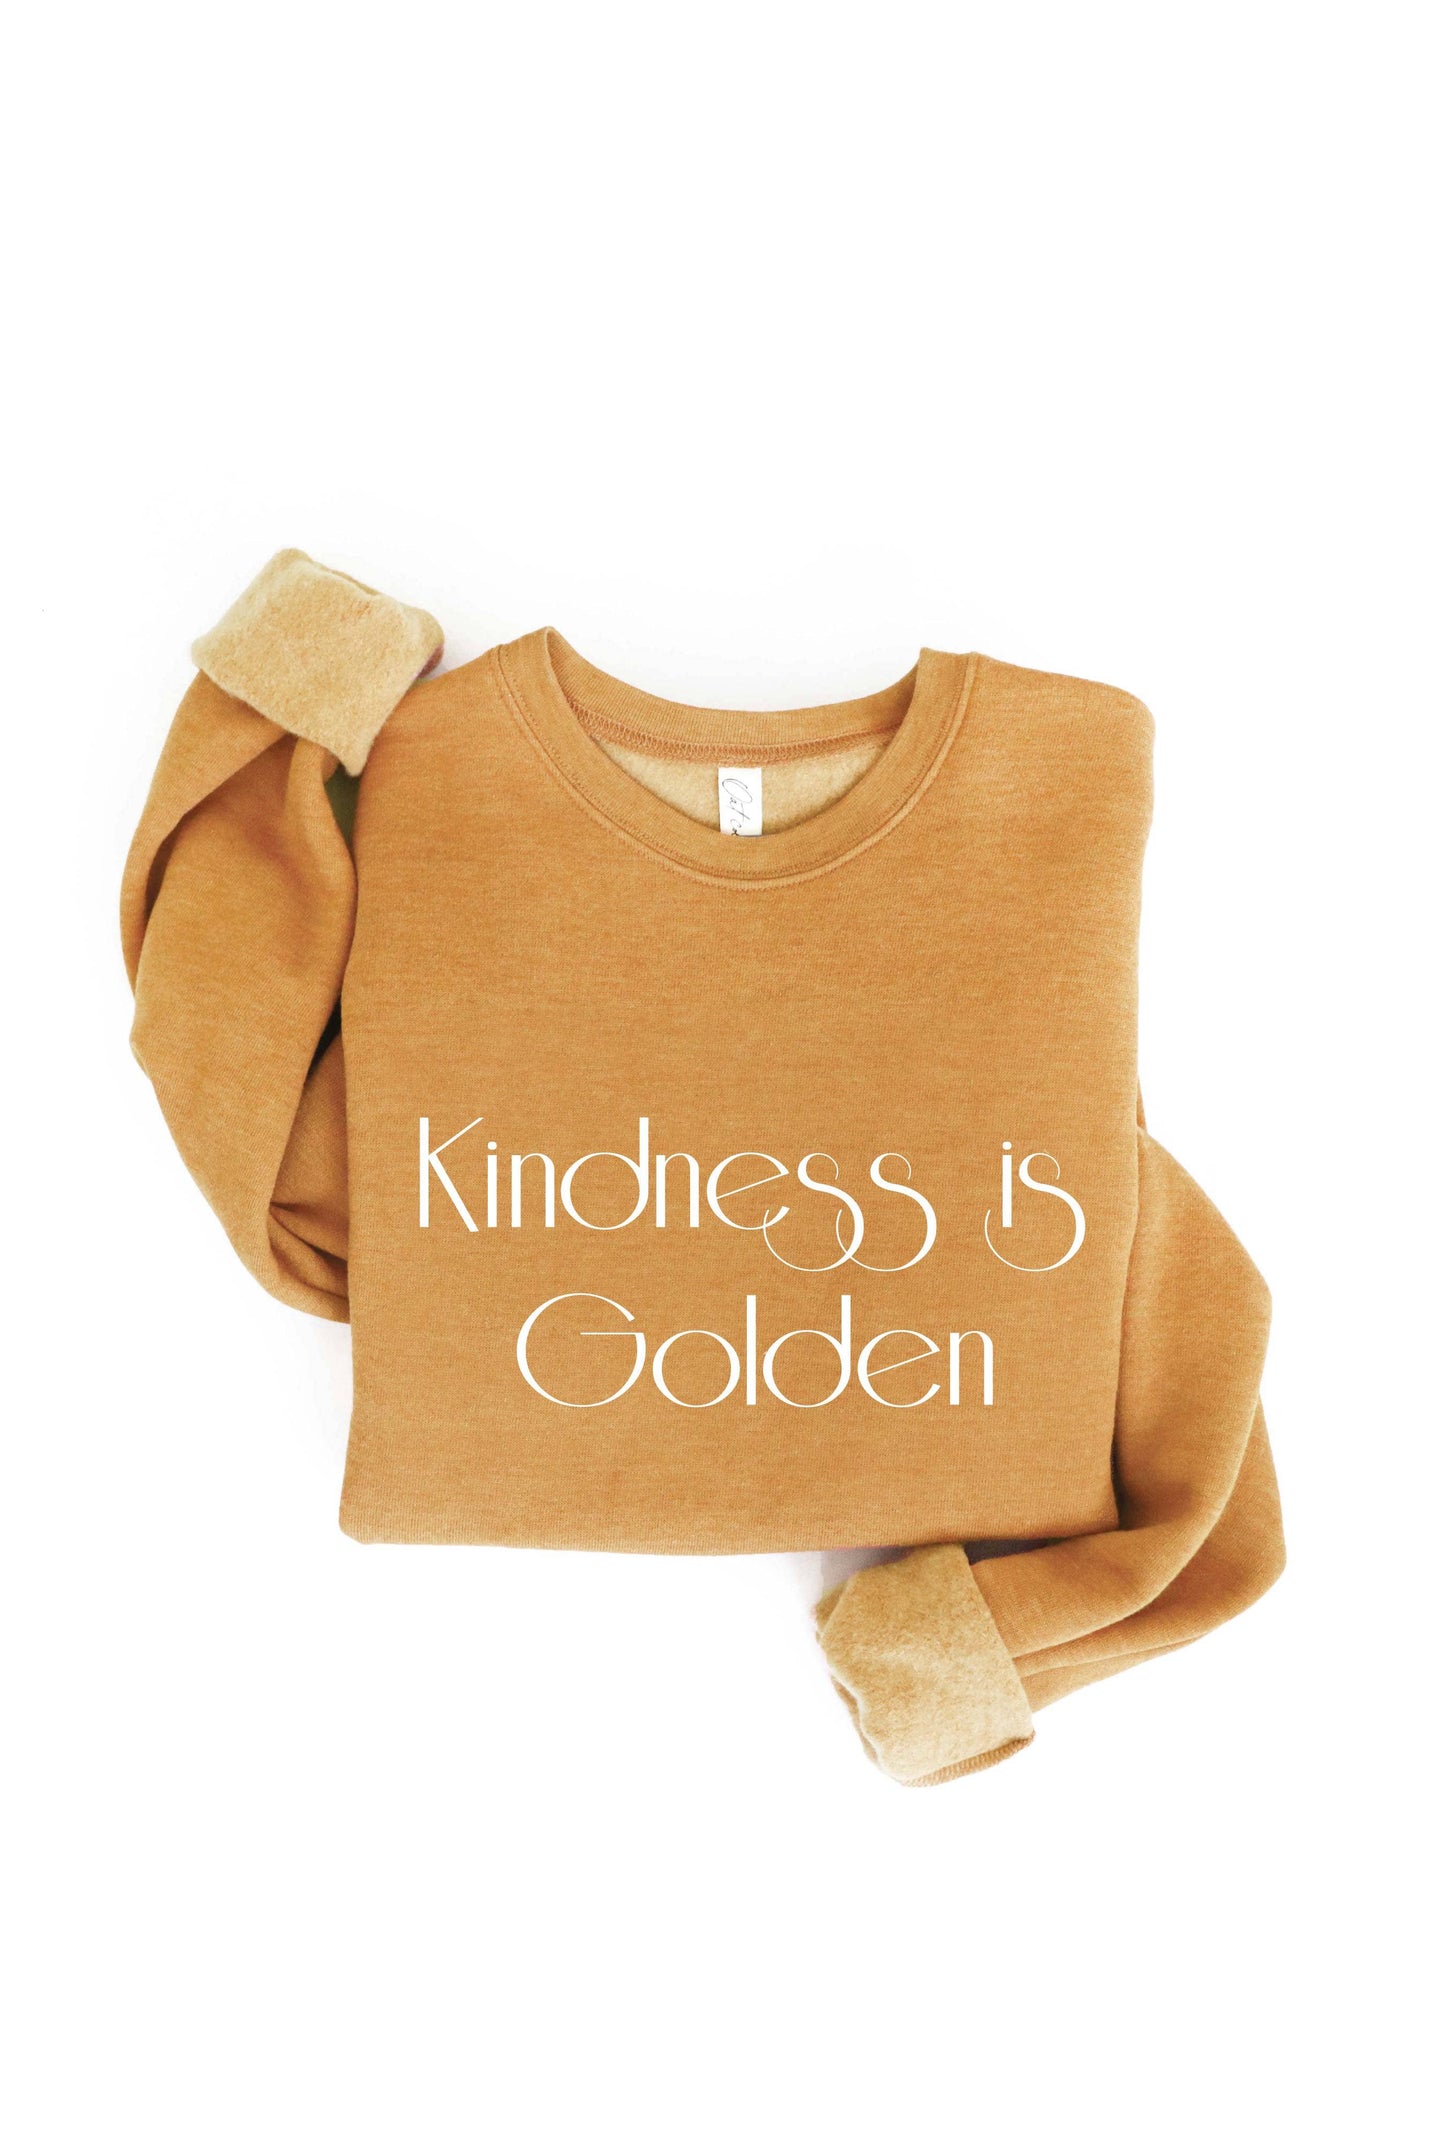 KINDNESS IS GOLDEN Graphic Sweatshirt